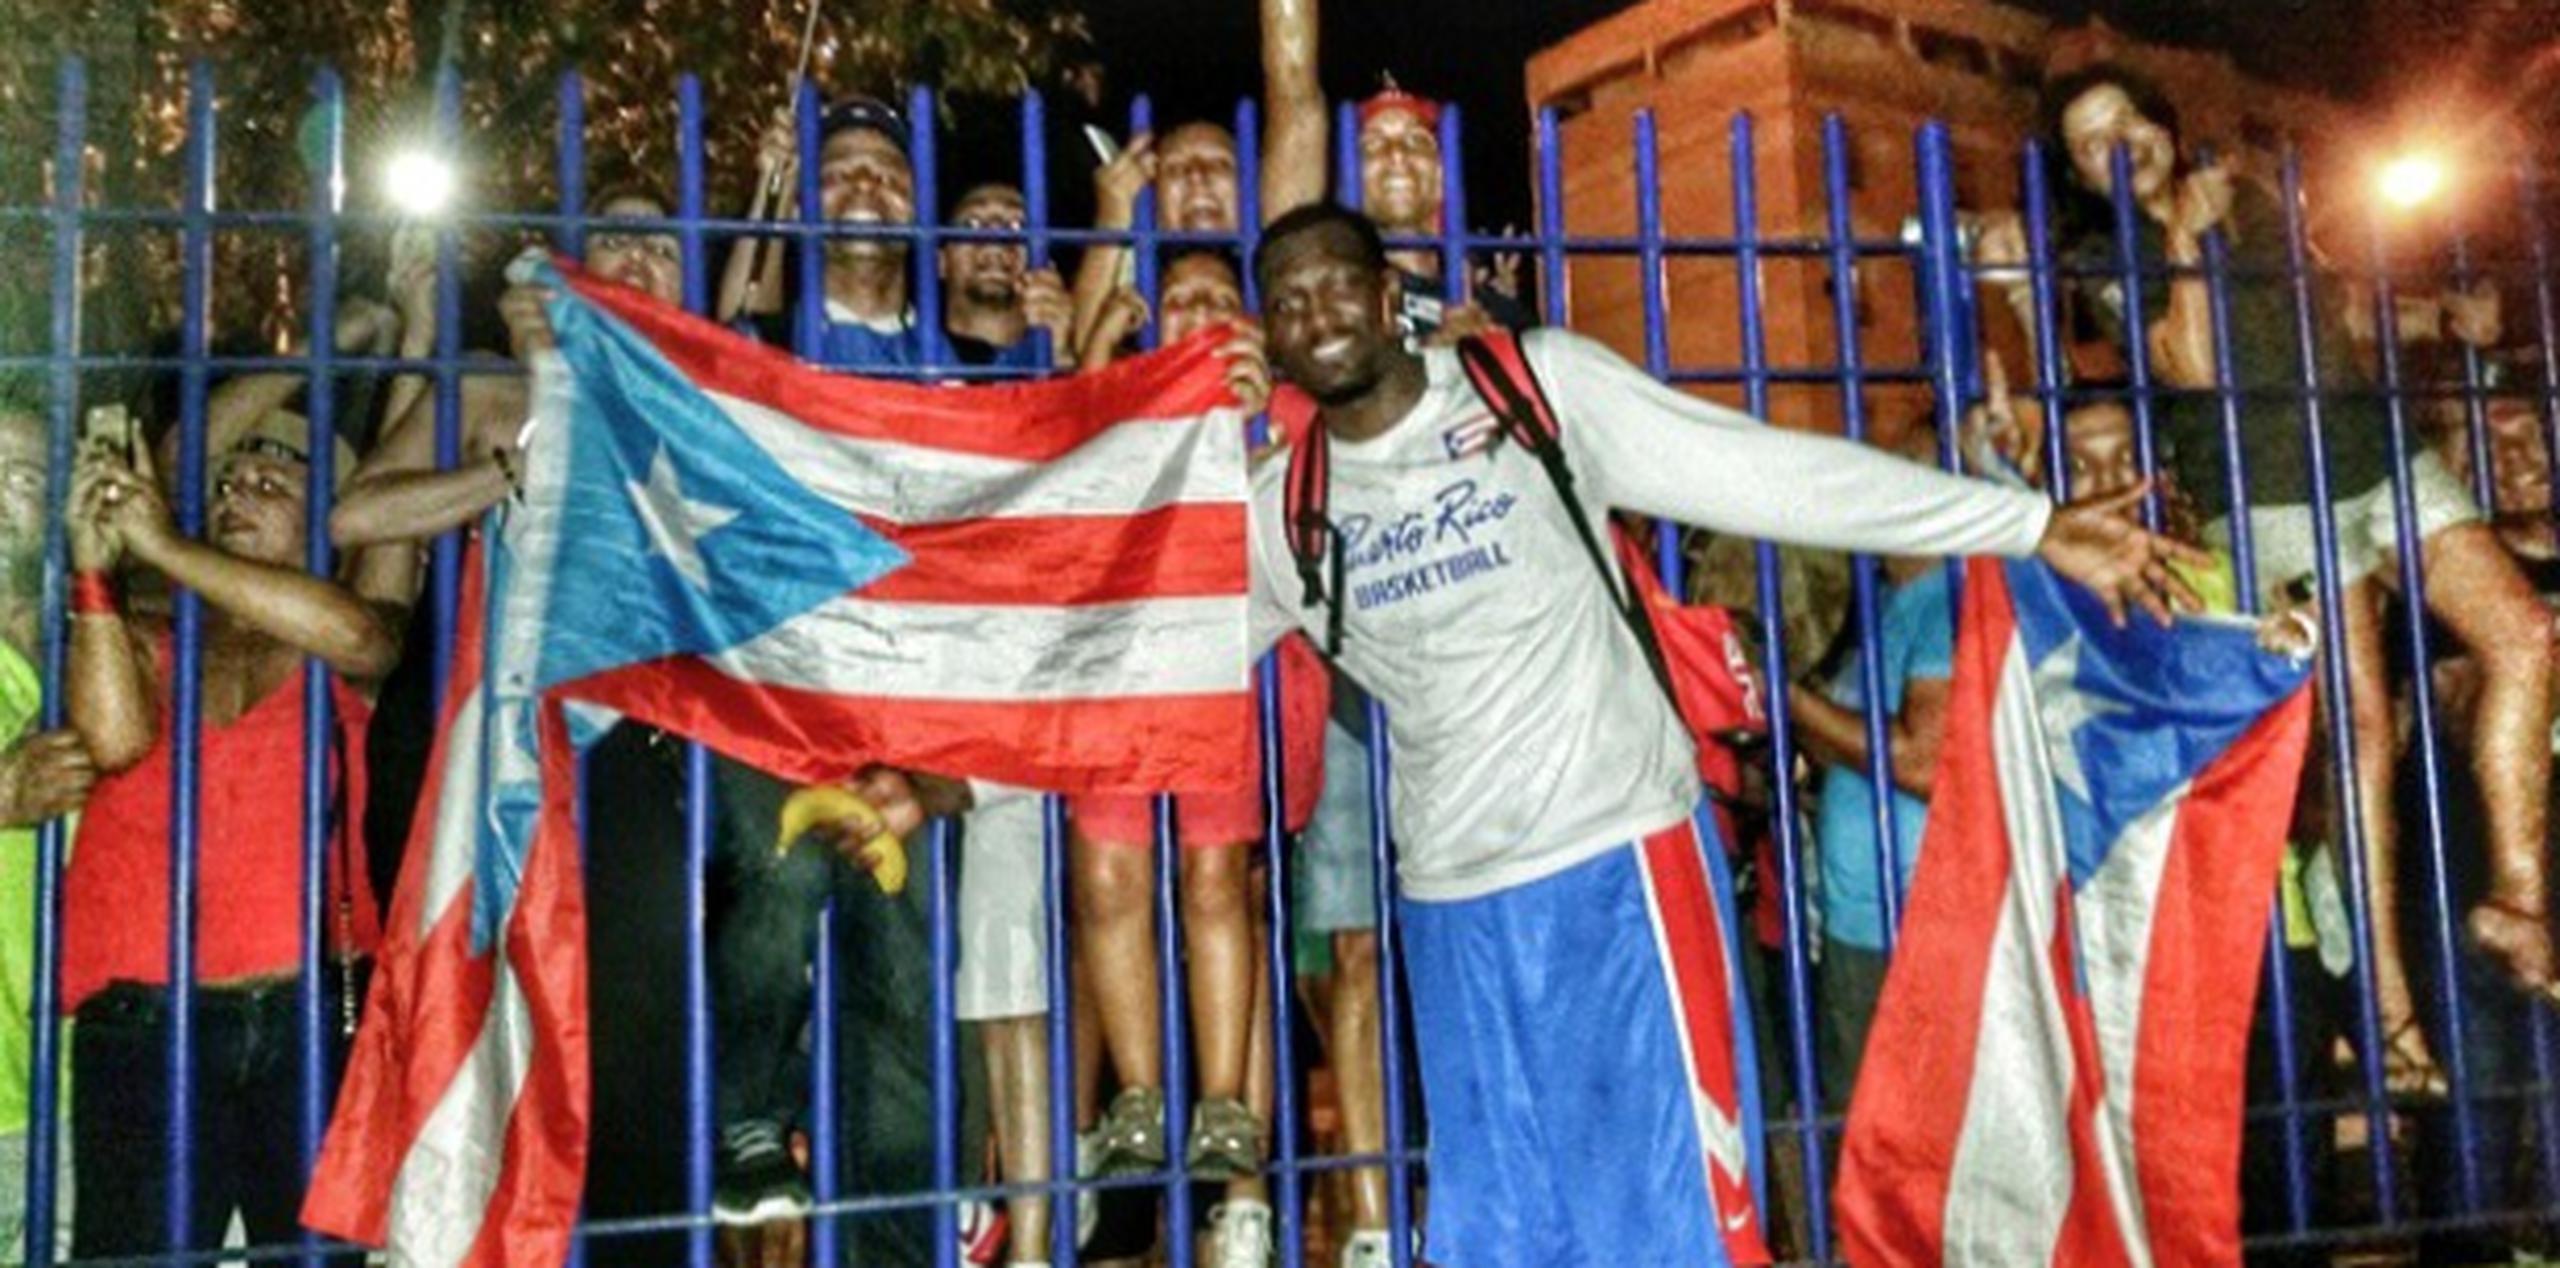 Los fanáticos que acompañaron a la Selección Nacional de Puerto Rico a Sevilla no se han quitado, y Puerto Rico los tendrán haciendo ruido en las gradas como si fuera el primer día.(Instagram)